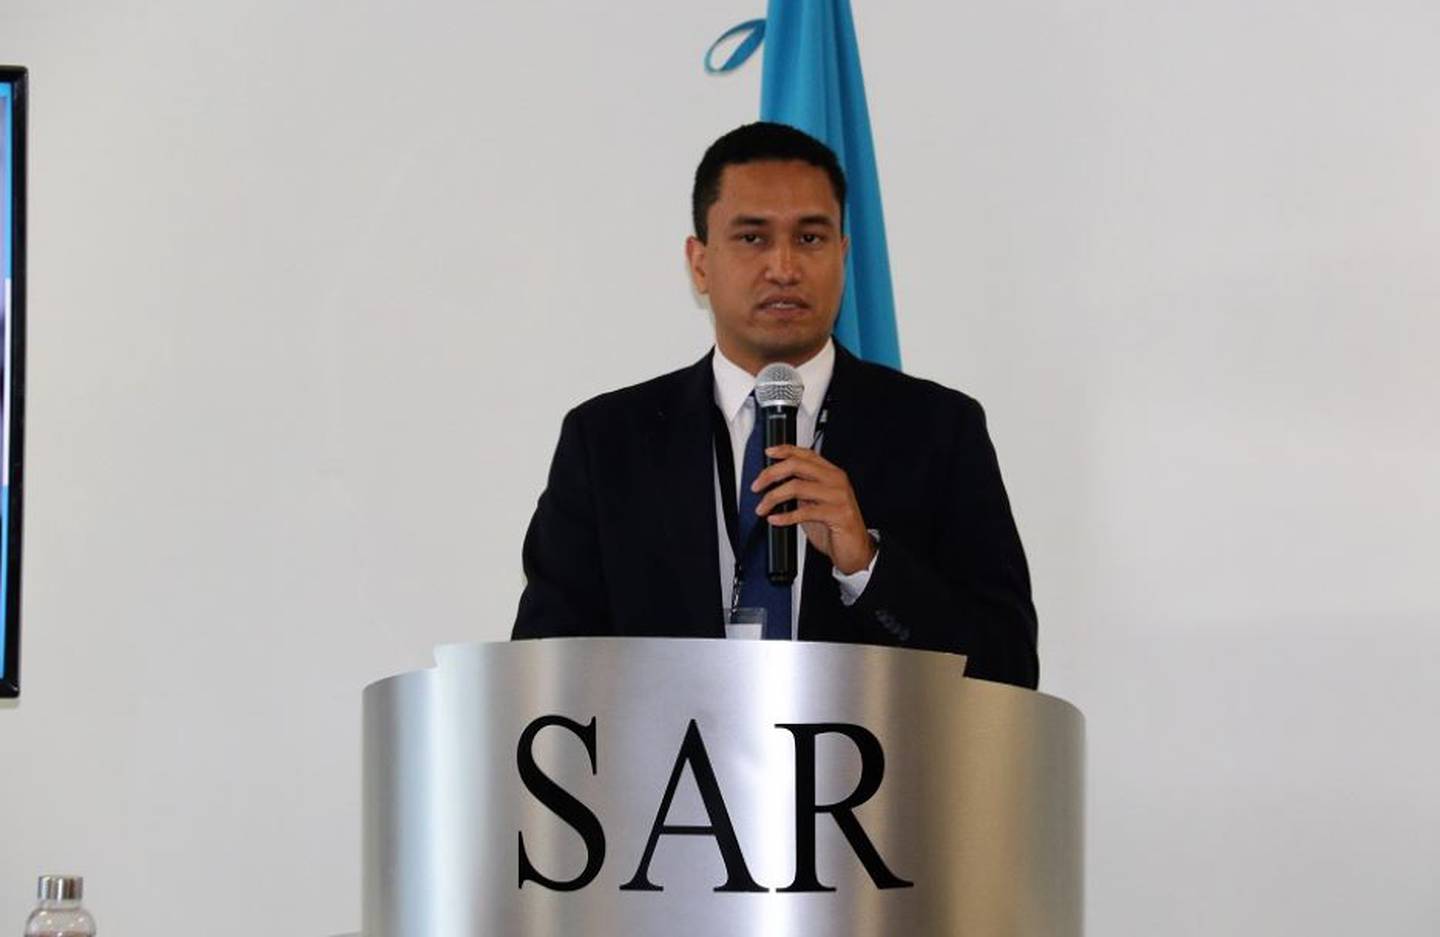 El subdirector ejecutivo del Servicio de Administración de Rentas (SAR), Christian Duarte.dfd